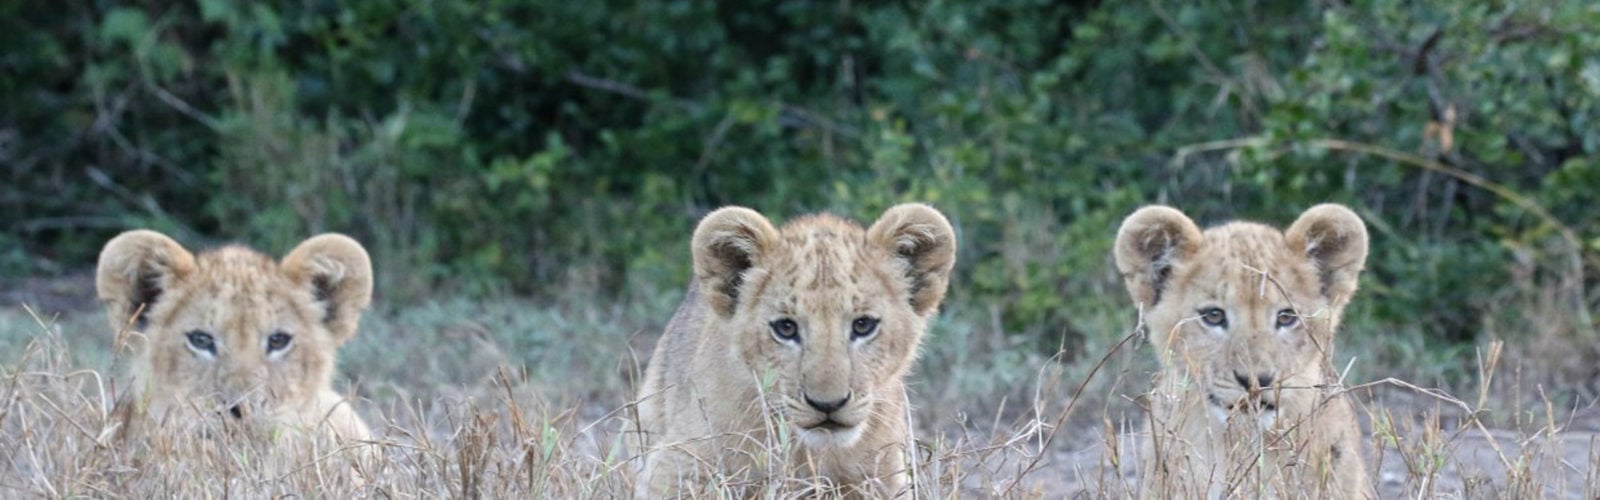 lion-cubs-solio